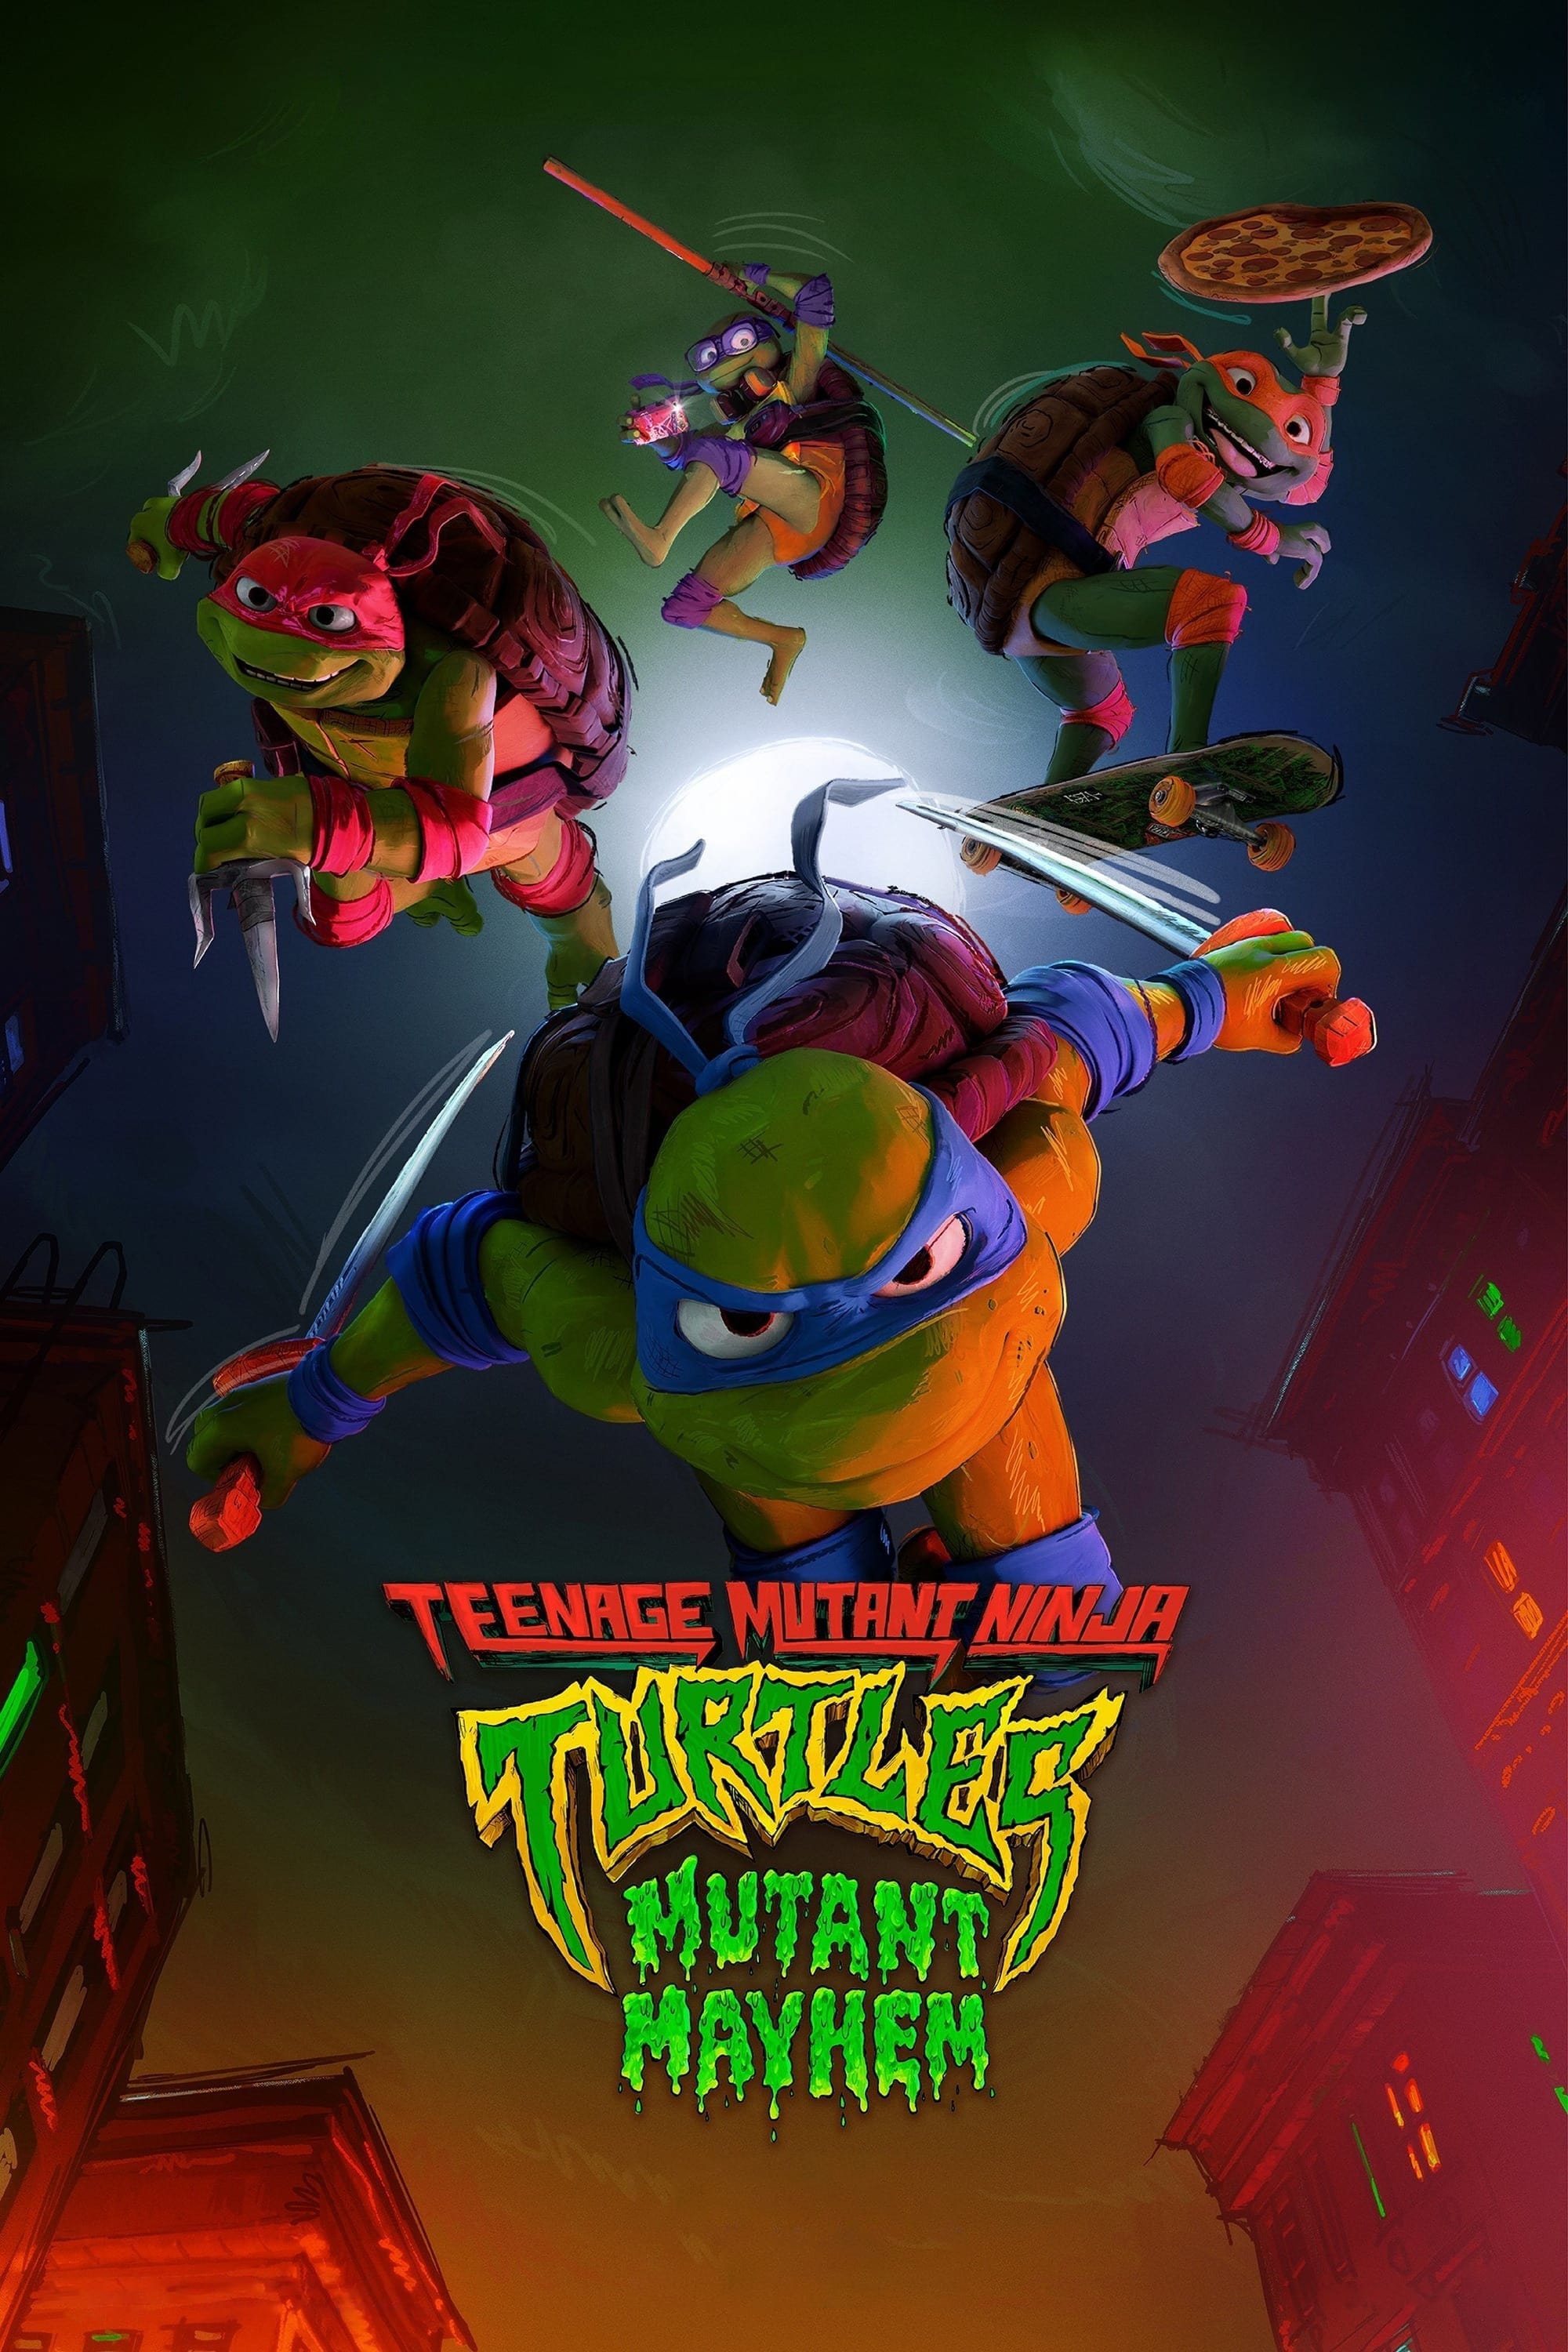 Teenage Mutant Ninja Turtles: Mutant Mayham